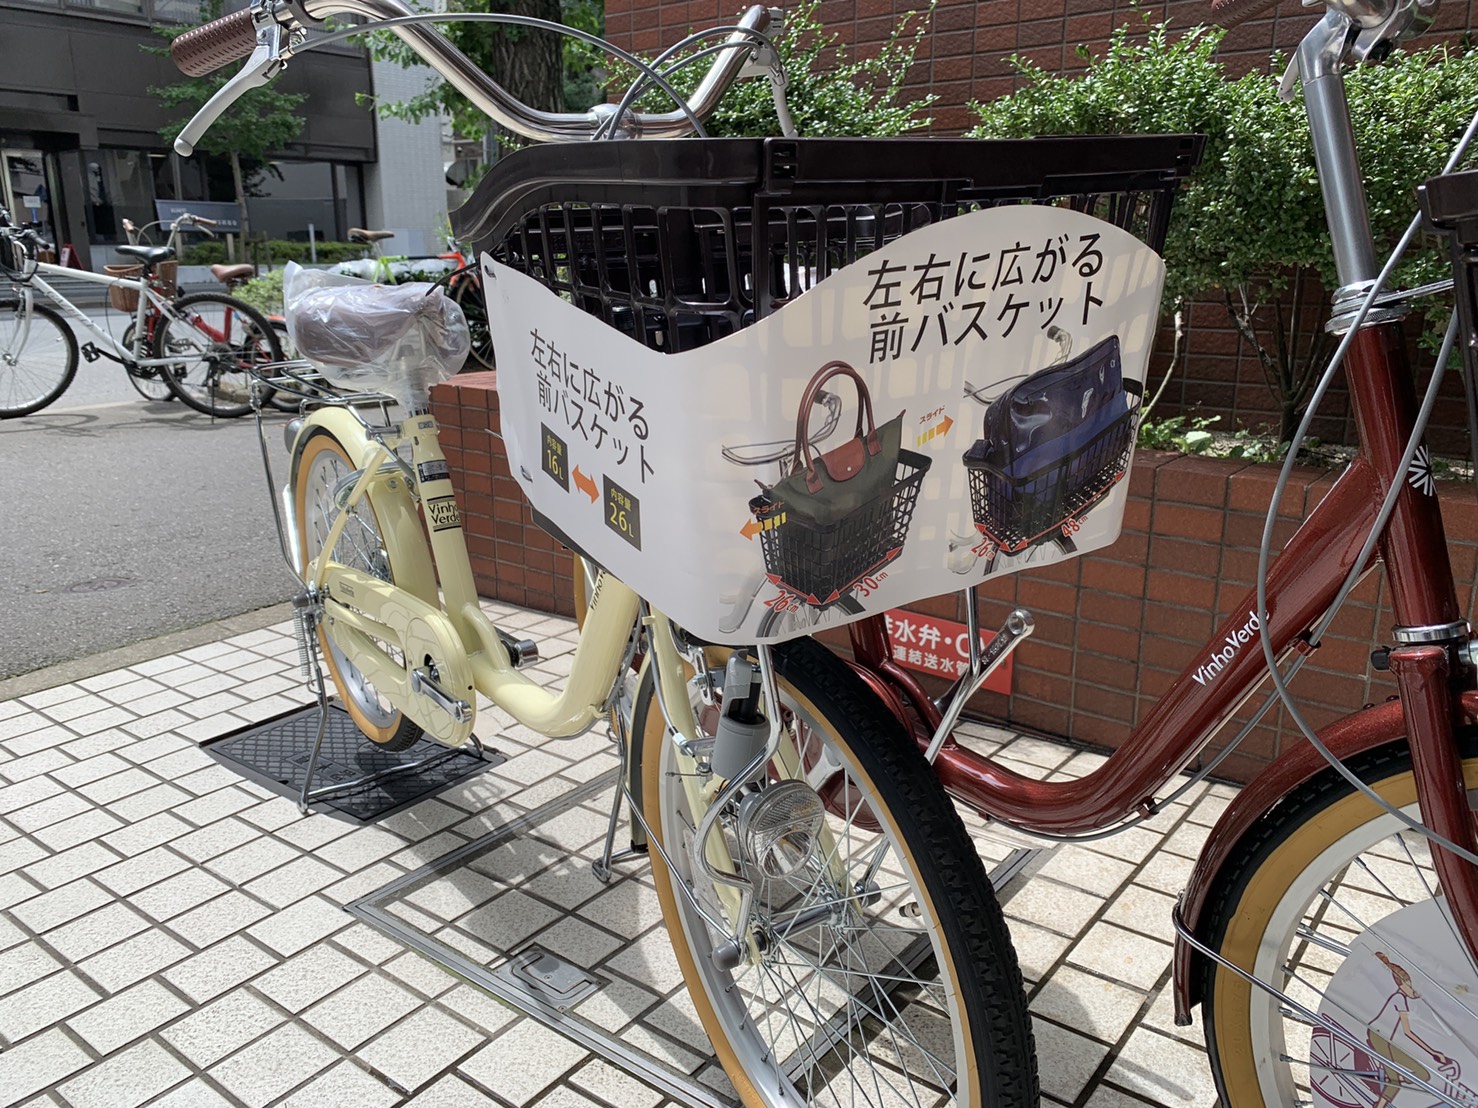 ミニチャリ(新車) 20インチ入荷しました。【博多駅前の自転車屋「銀の風」】 | 銀の風